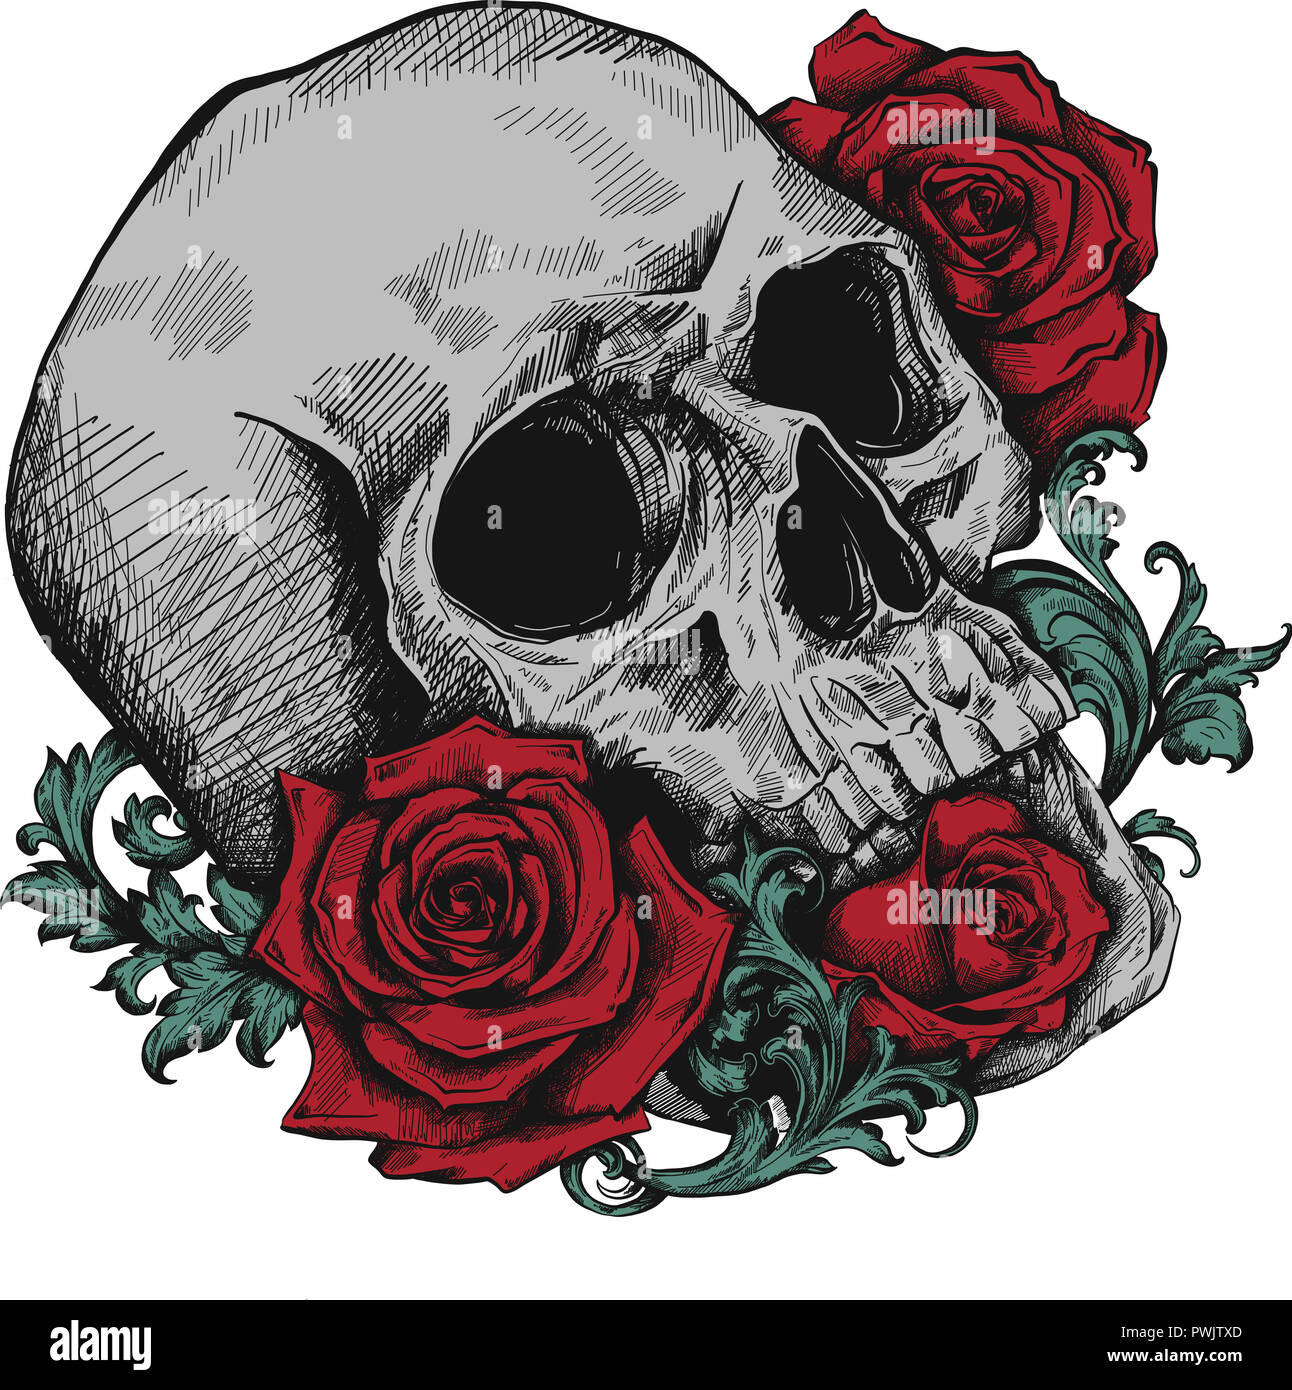 Un crâne humain avec des roses sur fond blanc Banque D'Images